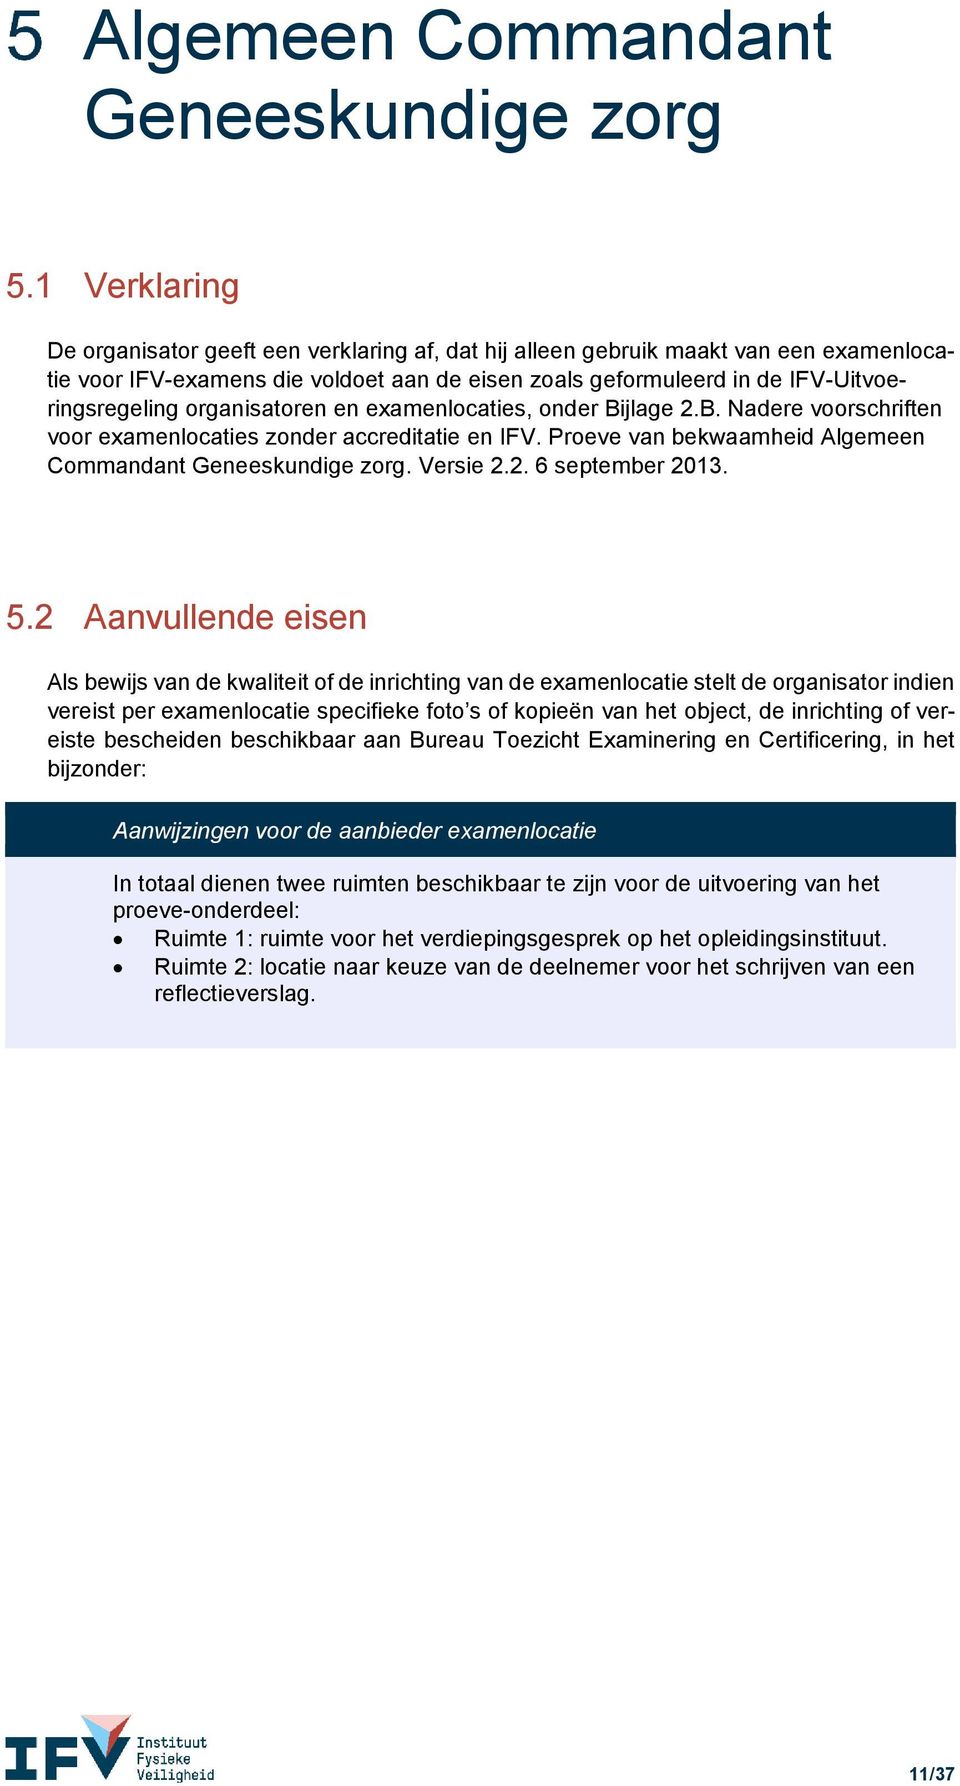 Proeve van bekwaamheid Algemeen Commandant Geneeskundige zorg. Versie 2.2. 6 september 2013. 5.